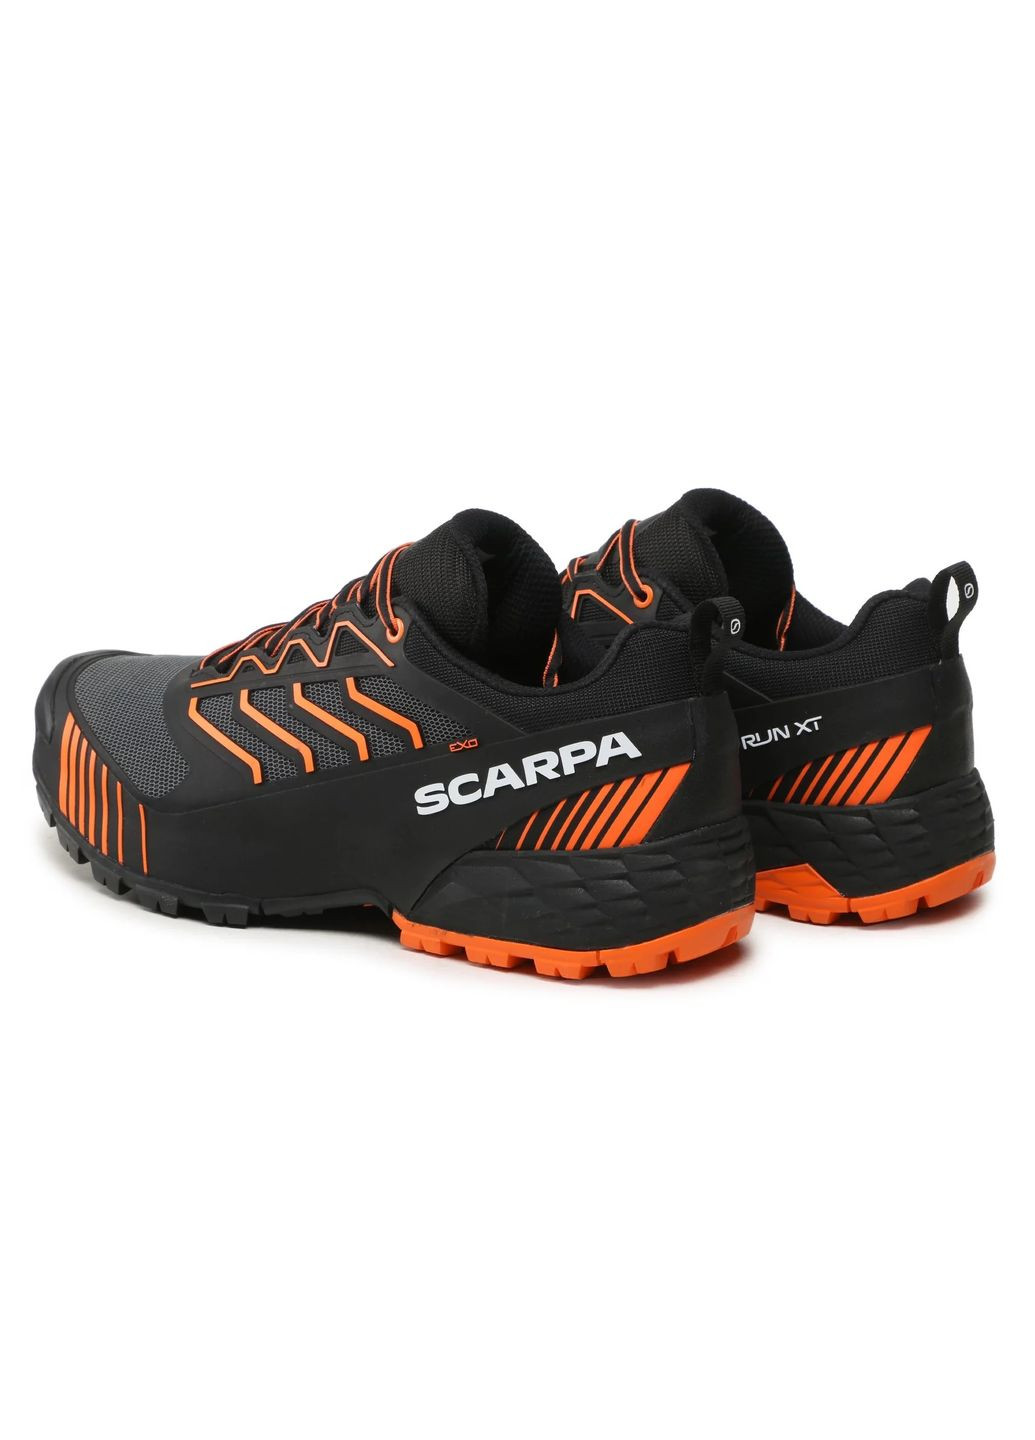 Комбіновані кросівки чоловічі ribelle run xt чорний-помаранчевий Scarpa